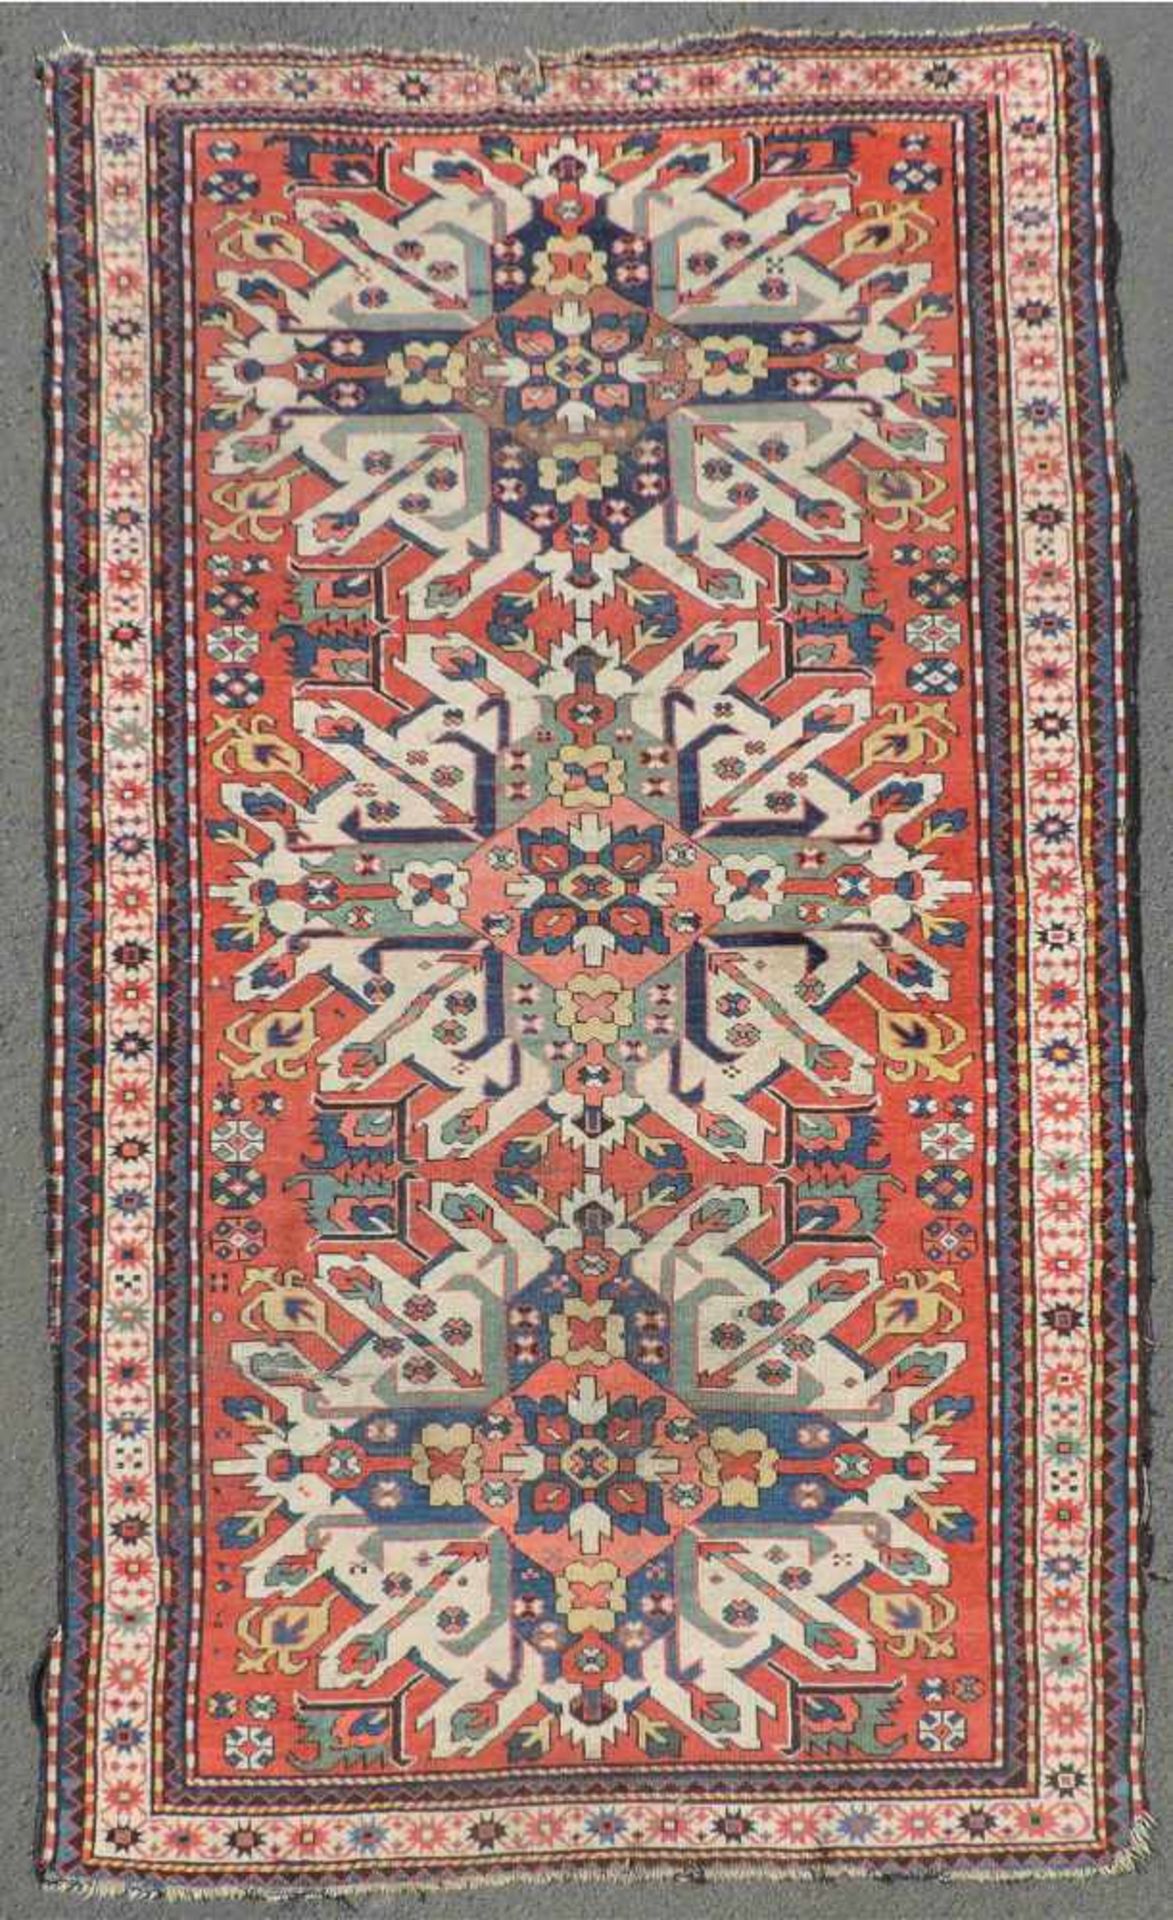 Tschelaberd "Adler Kasak" Teppich. Kaukasus. Antik, um 1880. 266 cm x 120 cm. Handgeknüpft. Wolle